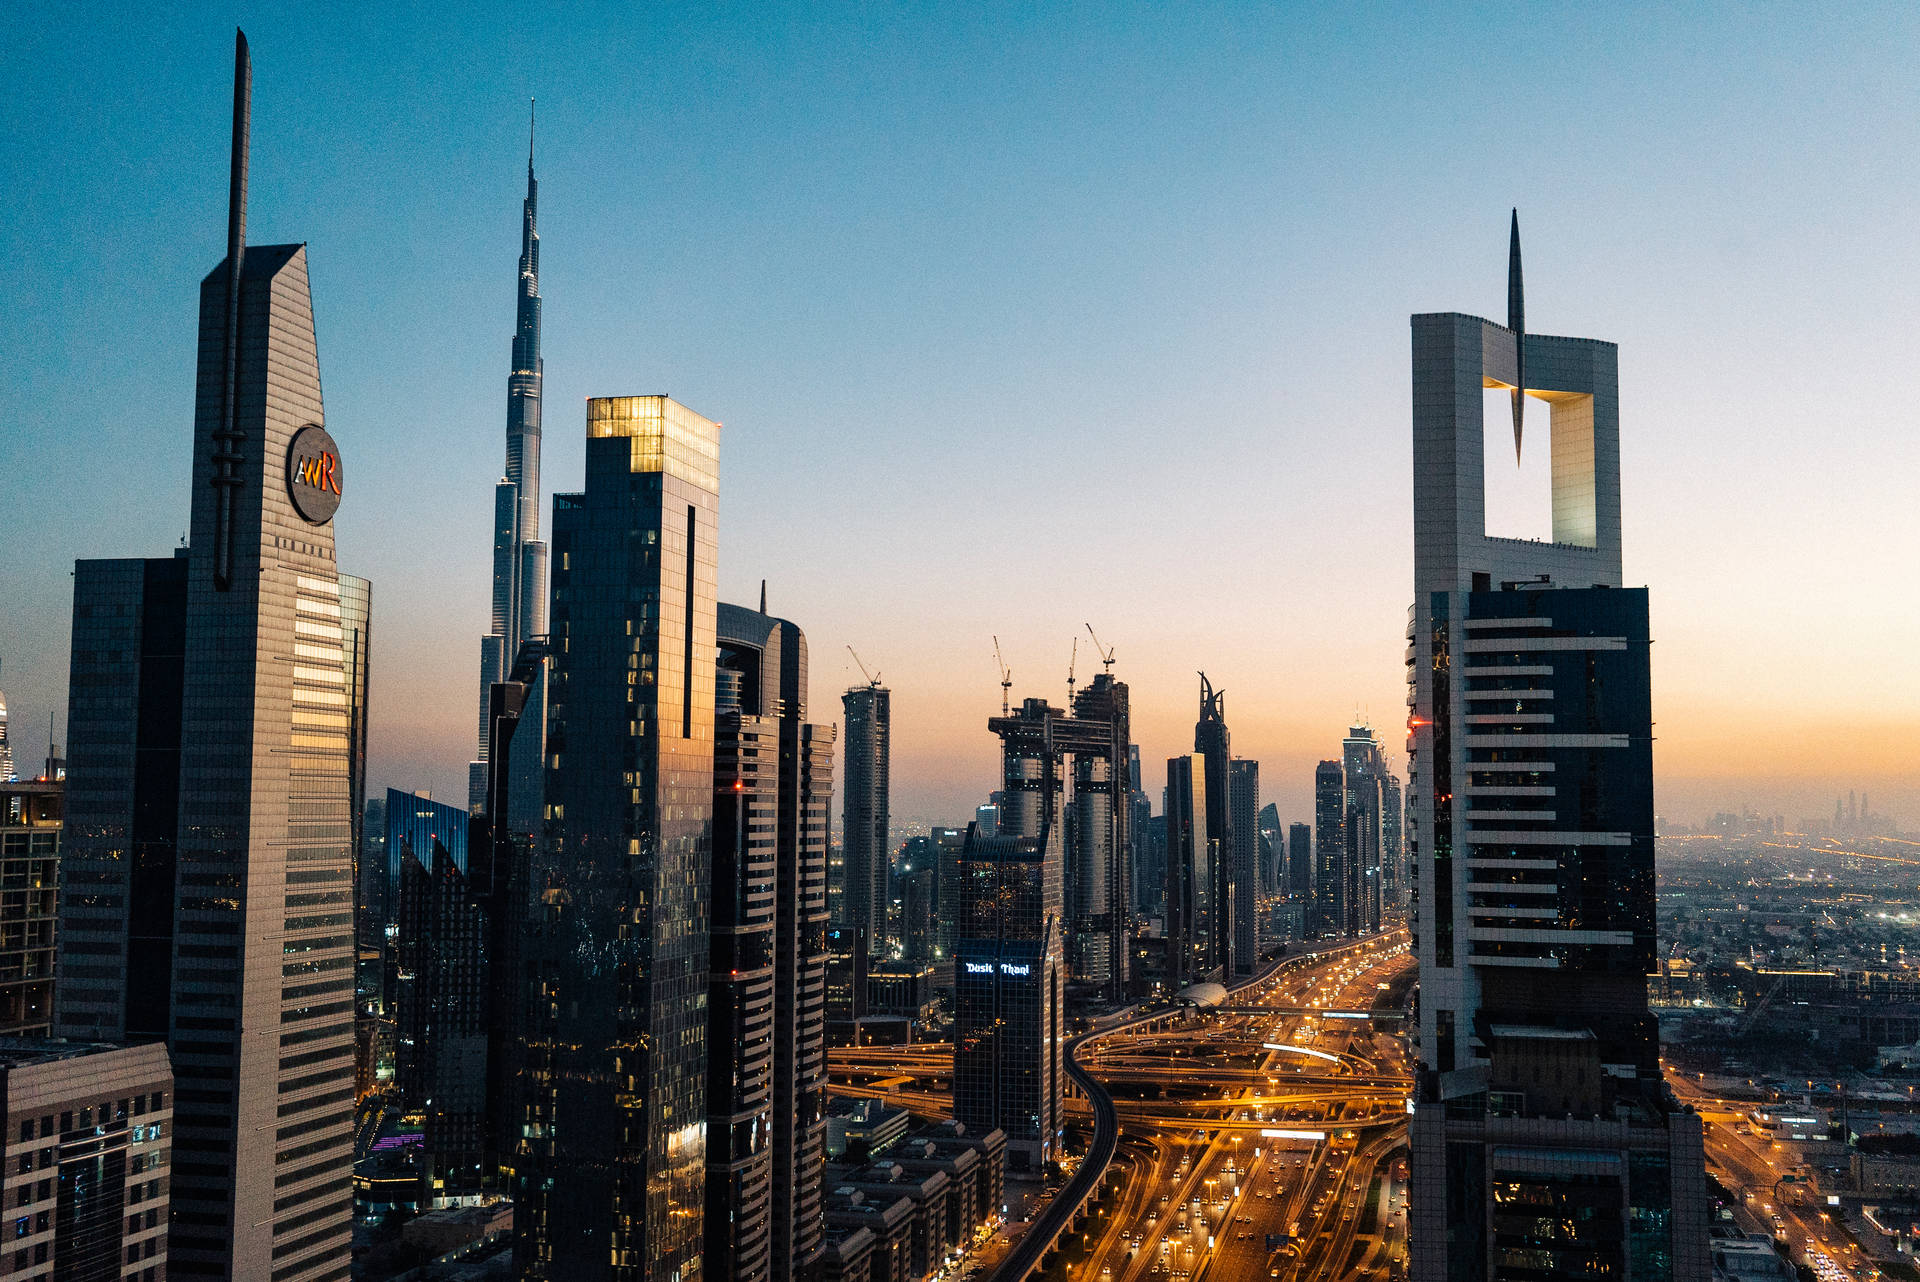 Dubaistädtische Wolkenkratzer Wallpaper